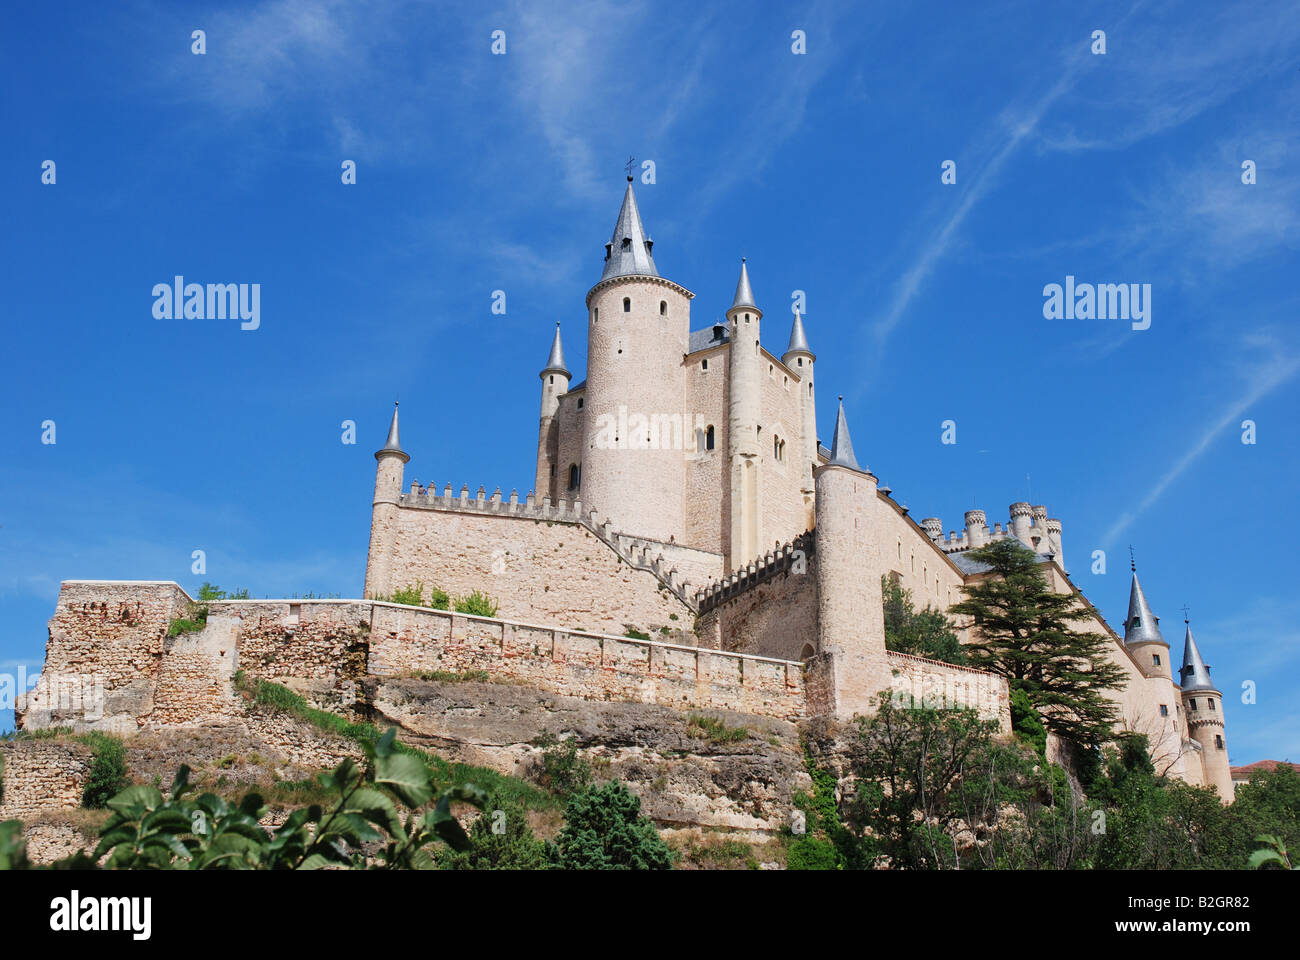 The Alcazar. Segovia. Castile Leon. Spain. Stock Photo